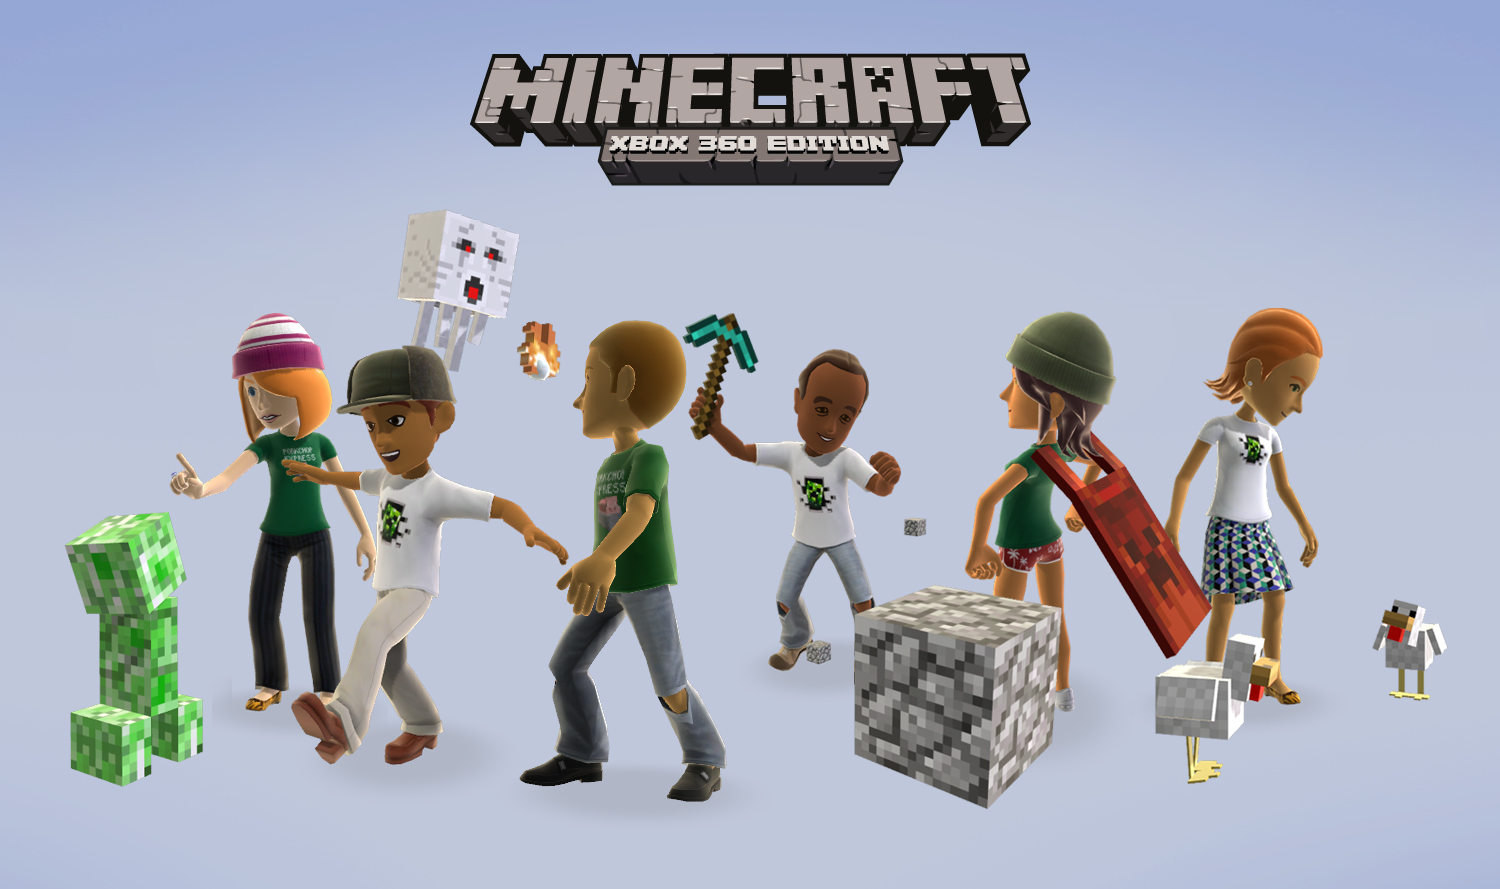 Minecraft para PS3 e X360 passou as vendas das versões de